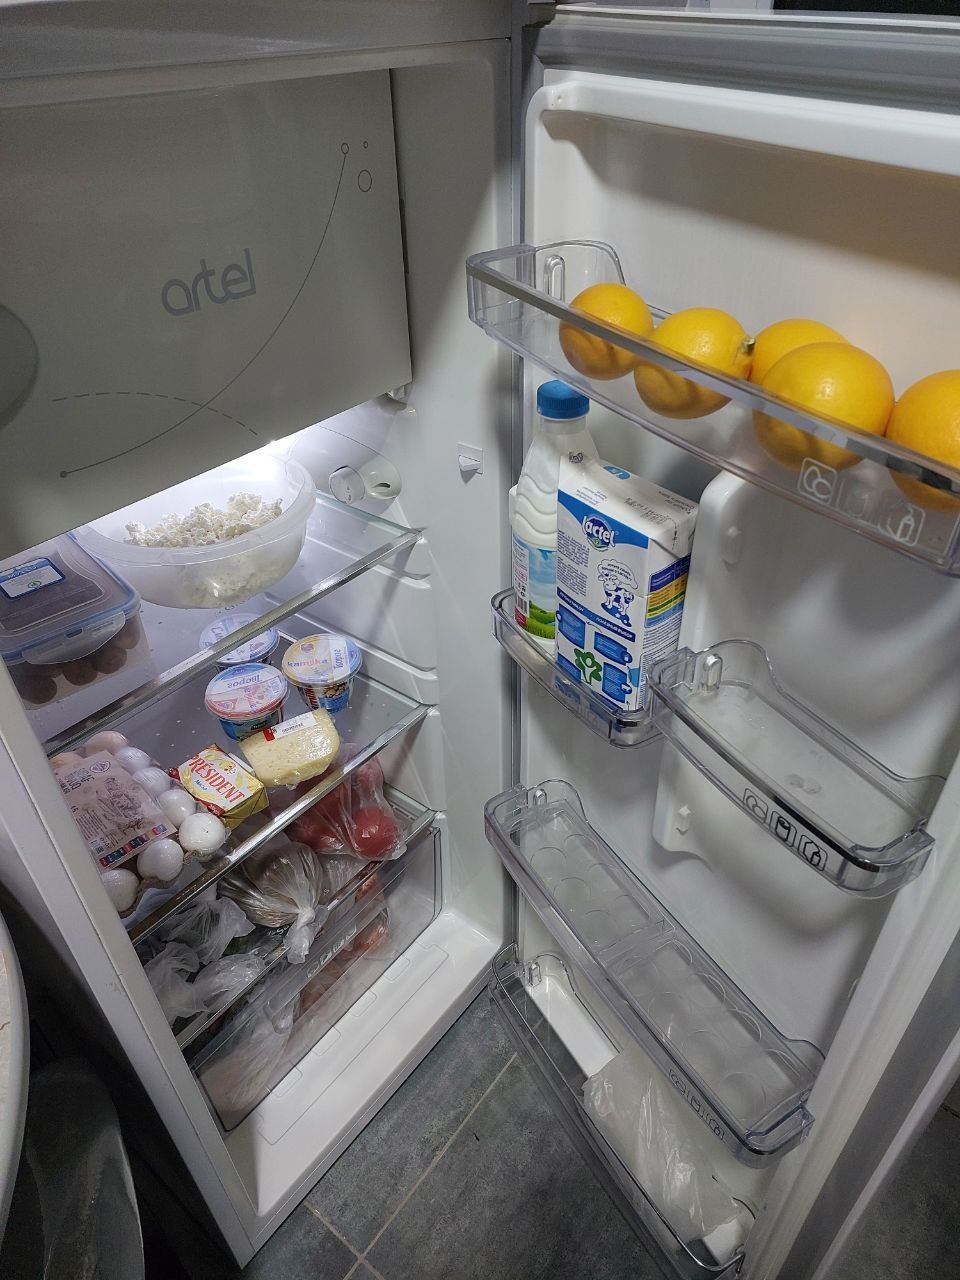 Продаётся холодильник Артель